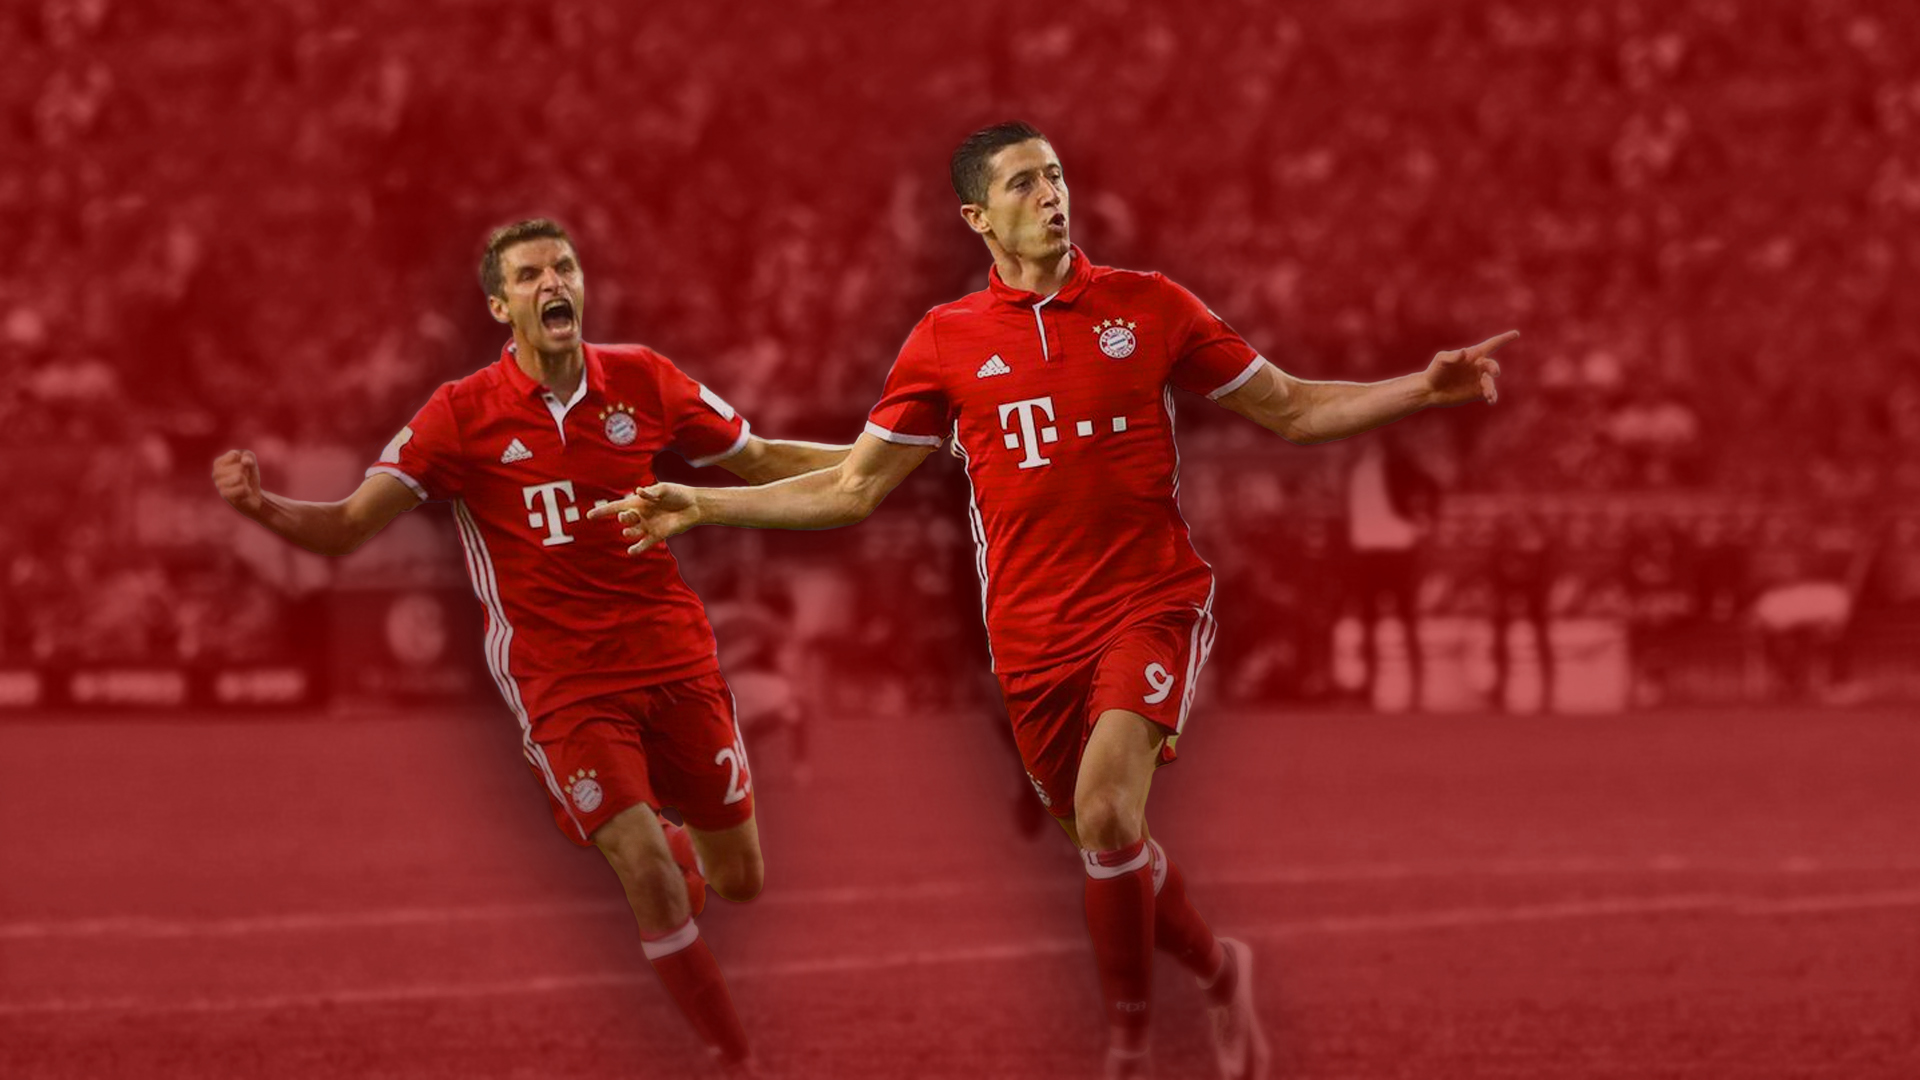 Bayern Munich Wallpaper - Kick Up A Soccer Ball - HD Wallpaper 